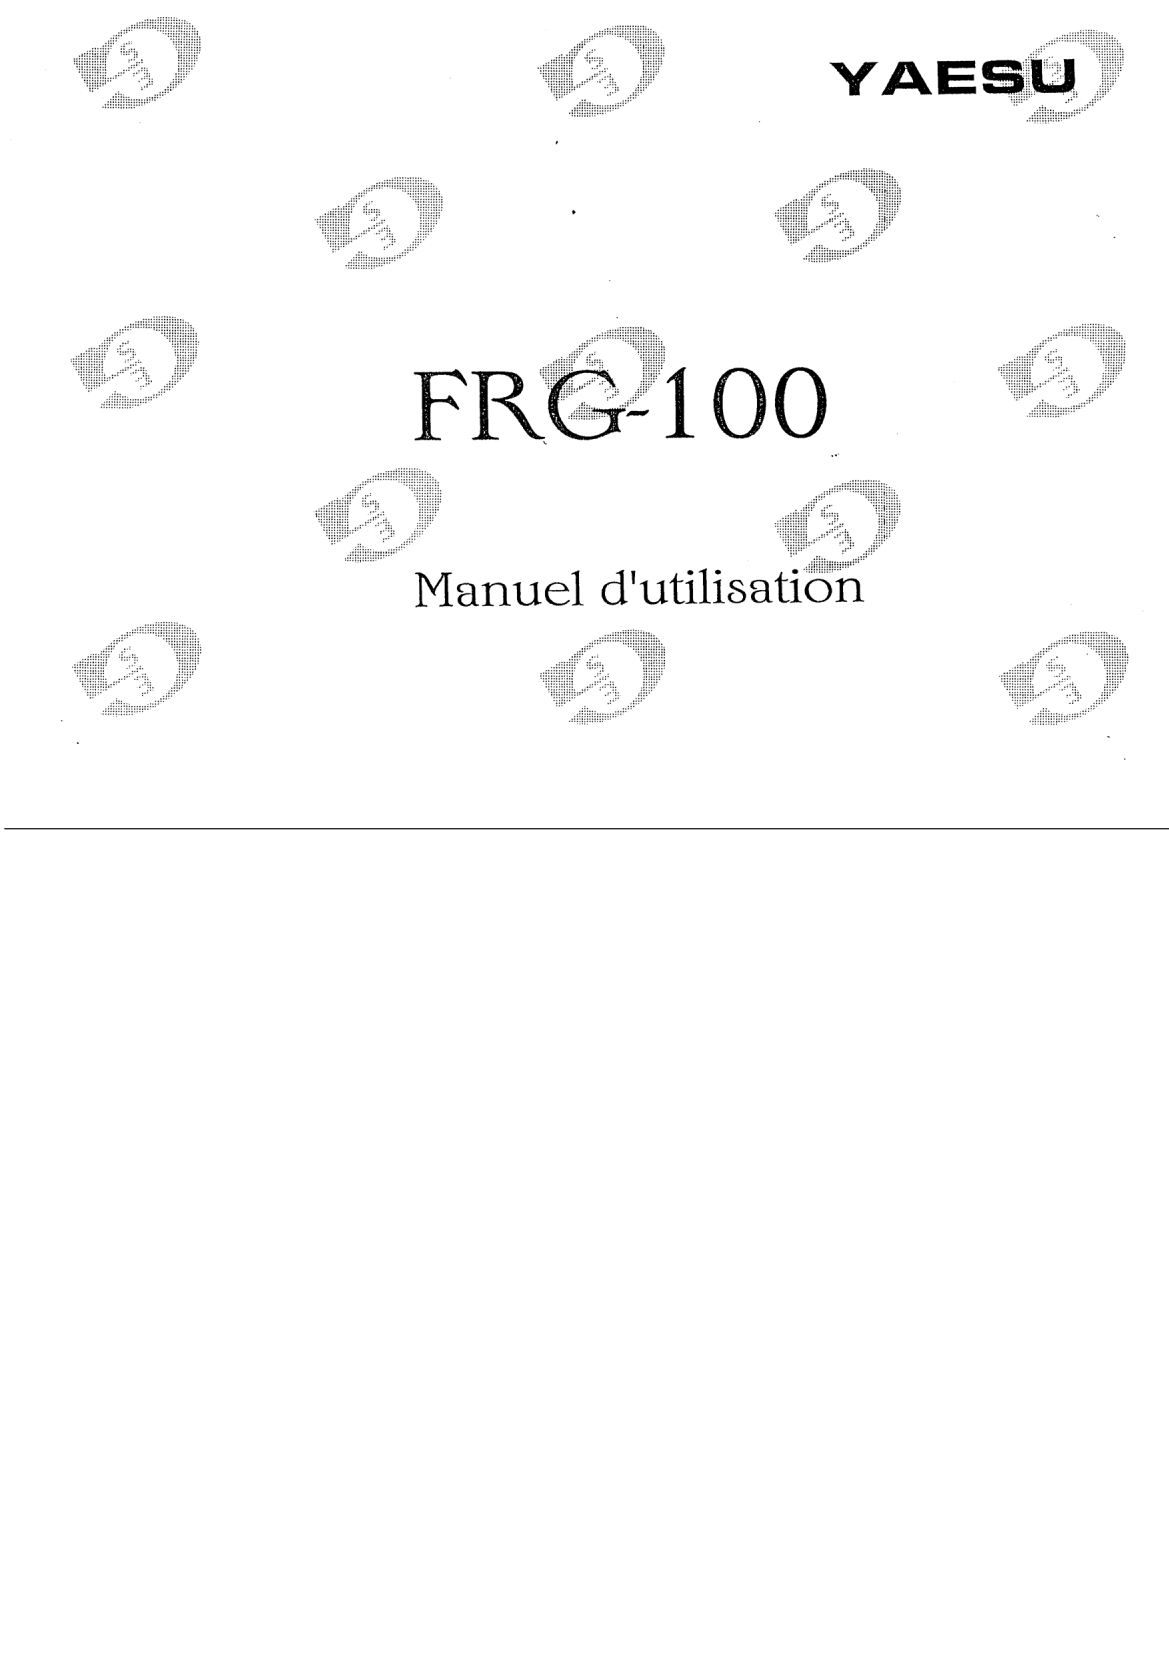  Yaesu: Frg 100 manuel utilisation    Yaesu Frg 100 Hf Radio Receiver manual page 1